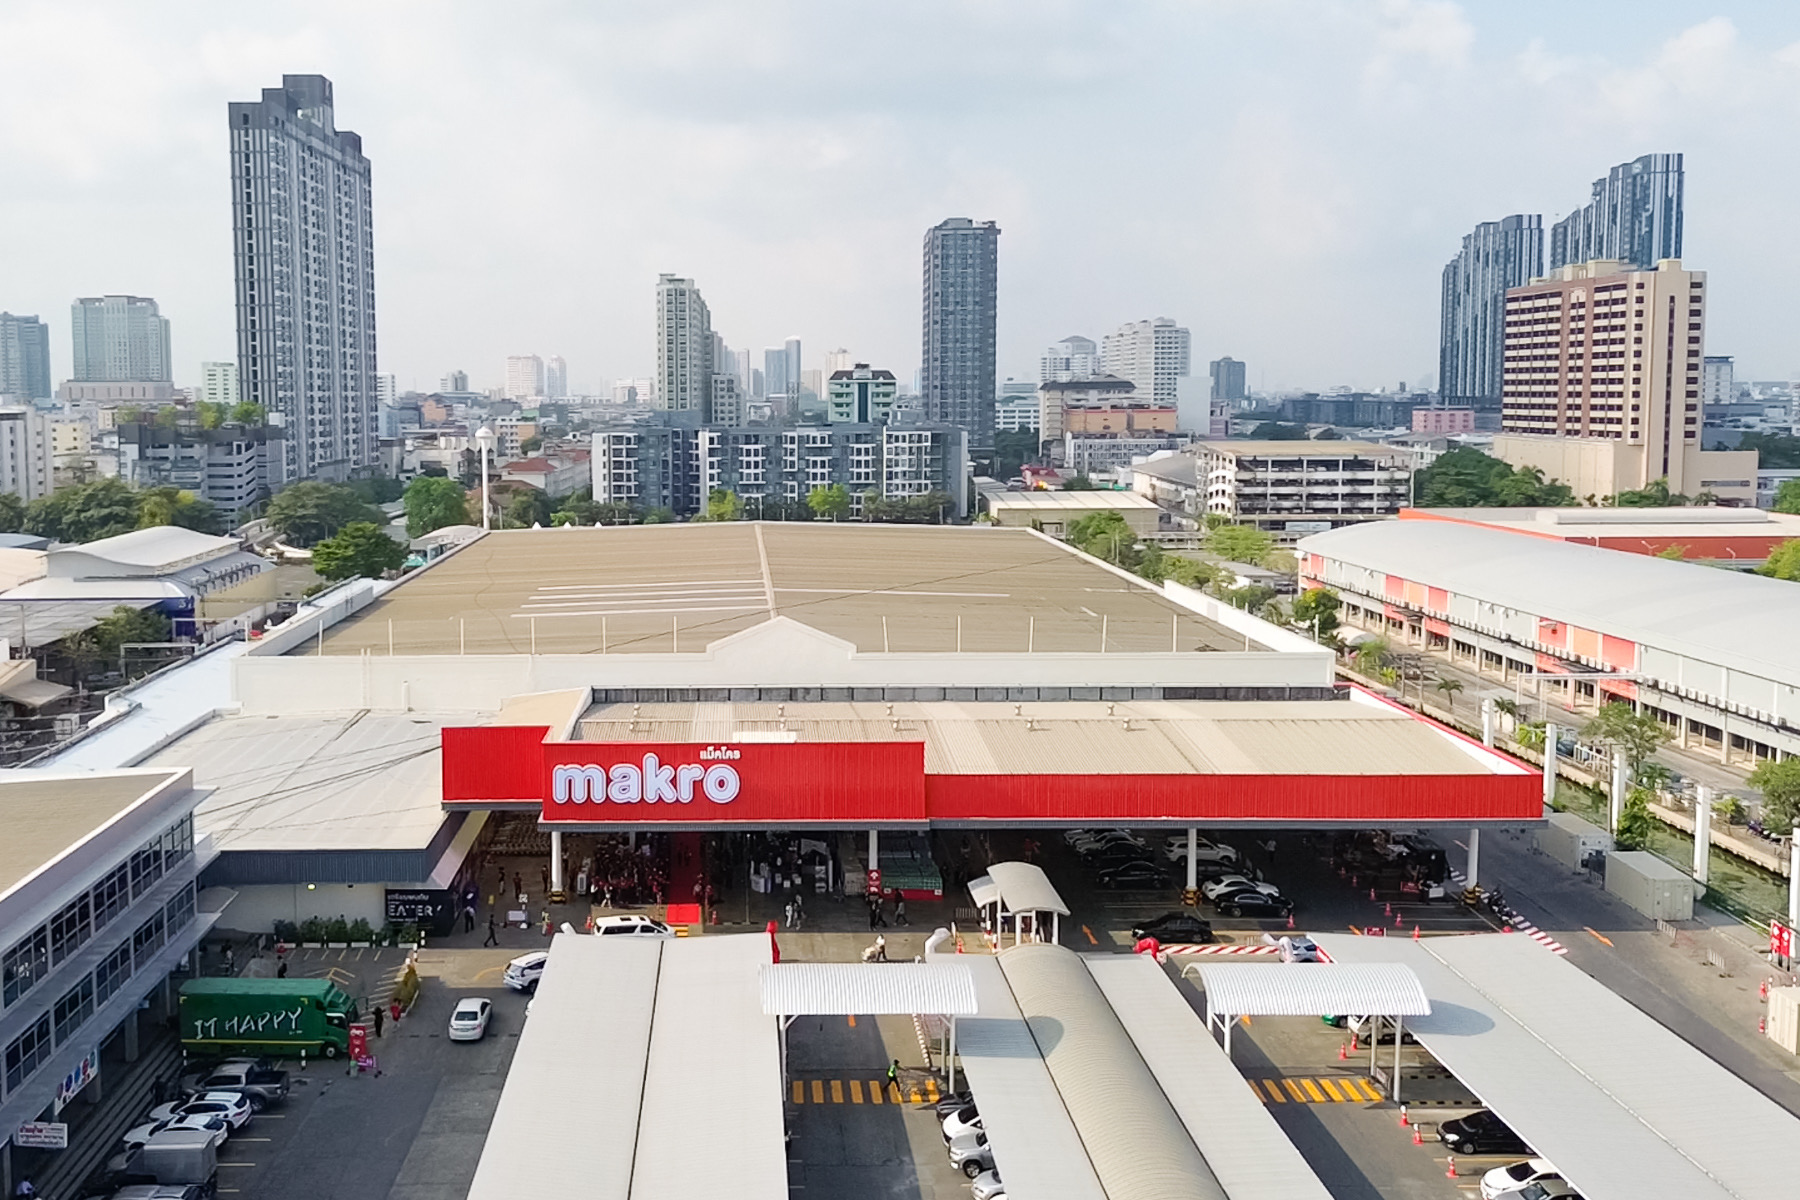 “แม็คโคร”ห้างค้าส่งแห่งแรกในประเทศไทย ยืนหนึ่งมากว่า 35 ปี พลิกโฉมสาขาแรกลาดพร้าว รับฐานลูกค้าขยายตัวโตต่อเนื่อง ตอกย้ำตัวจริงค้าส่งครบครัน ทั้งสินค้าอุปโภค-บริโภค ตอบโจทย์ลูกค้าทุกกลุ่ม